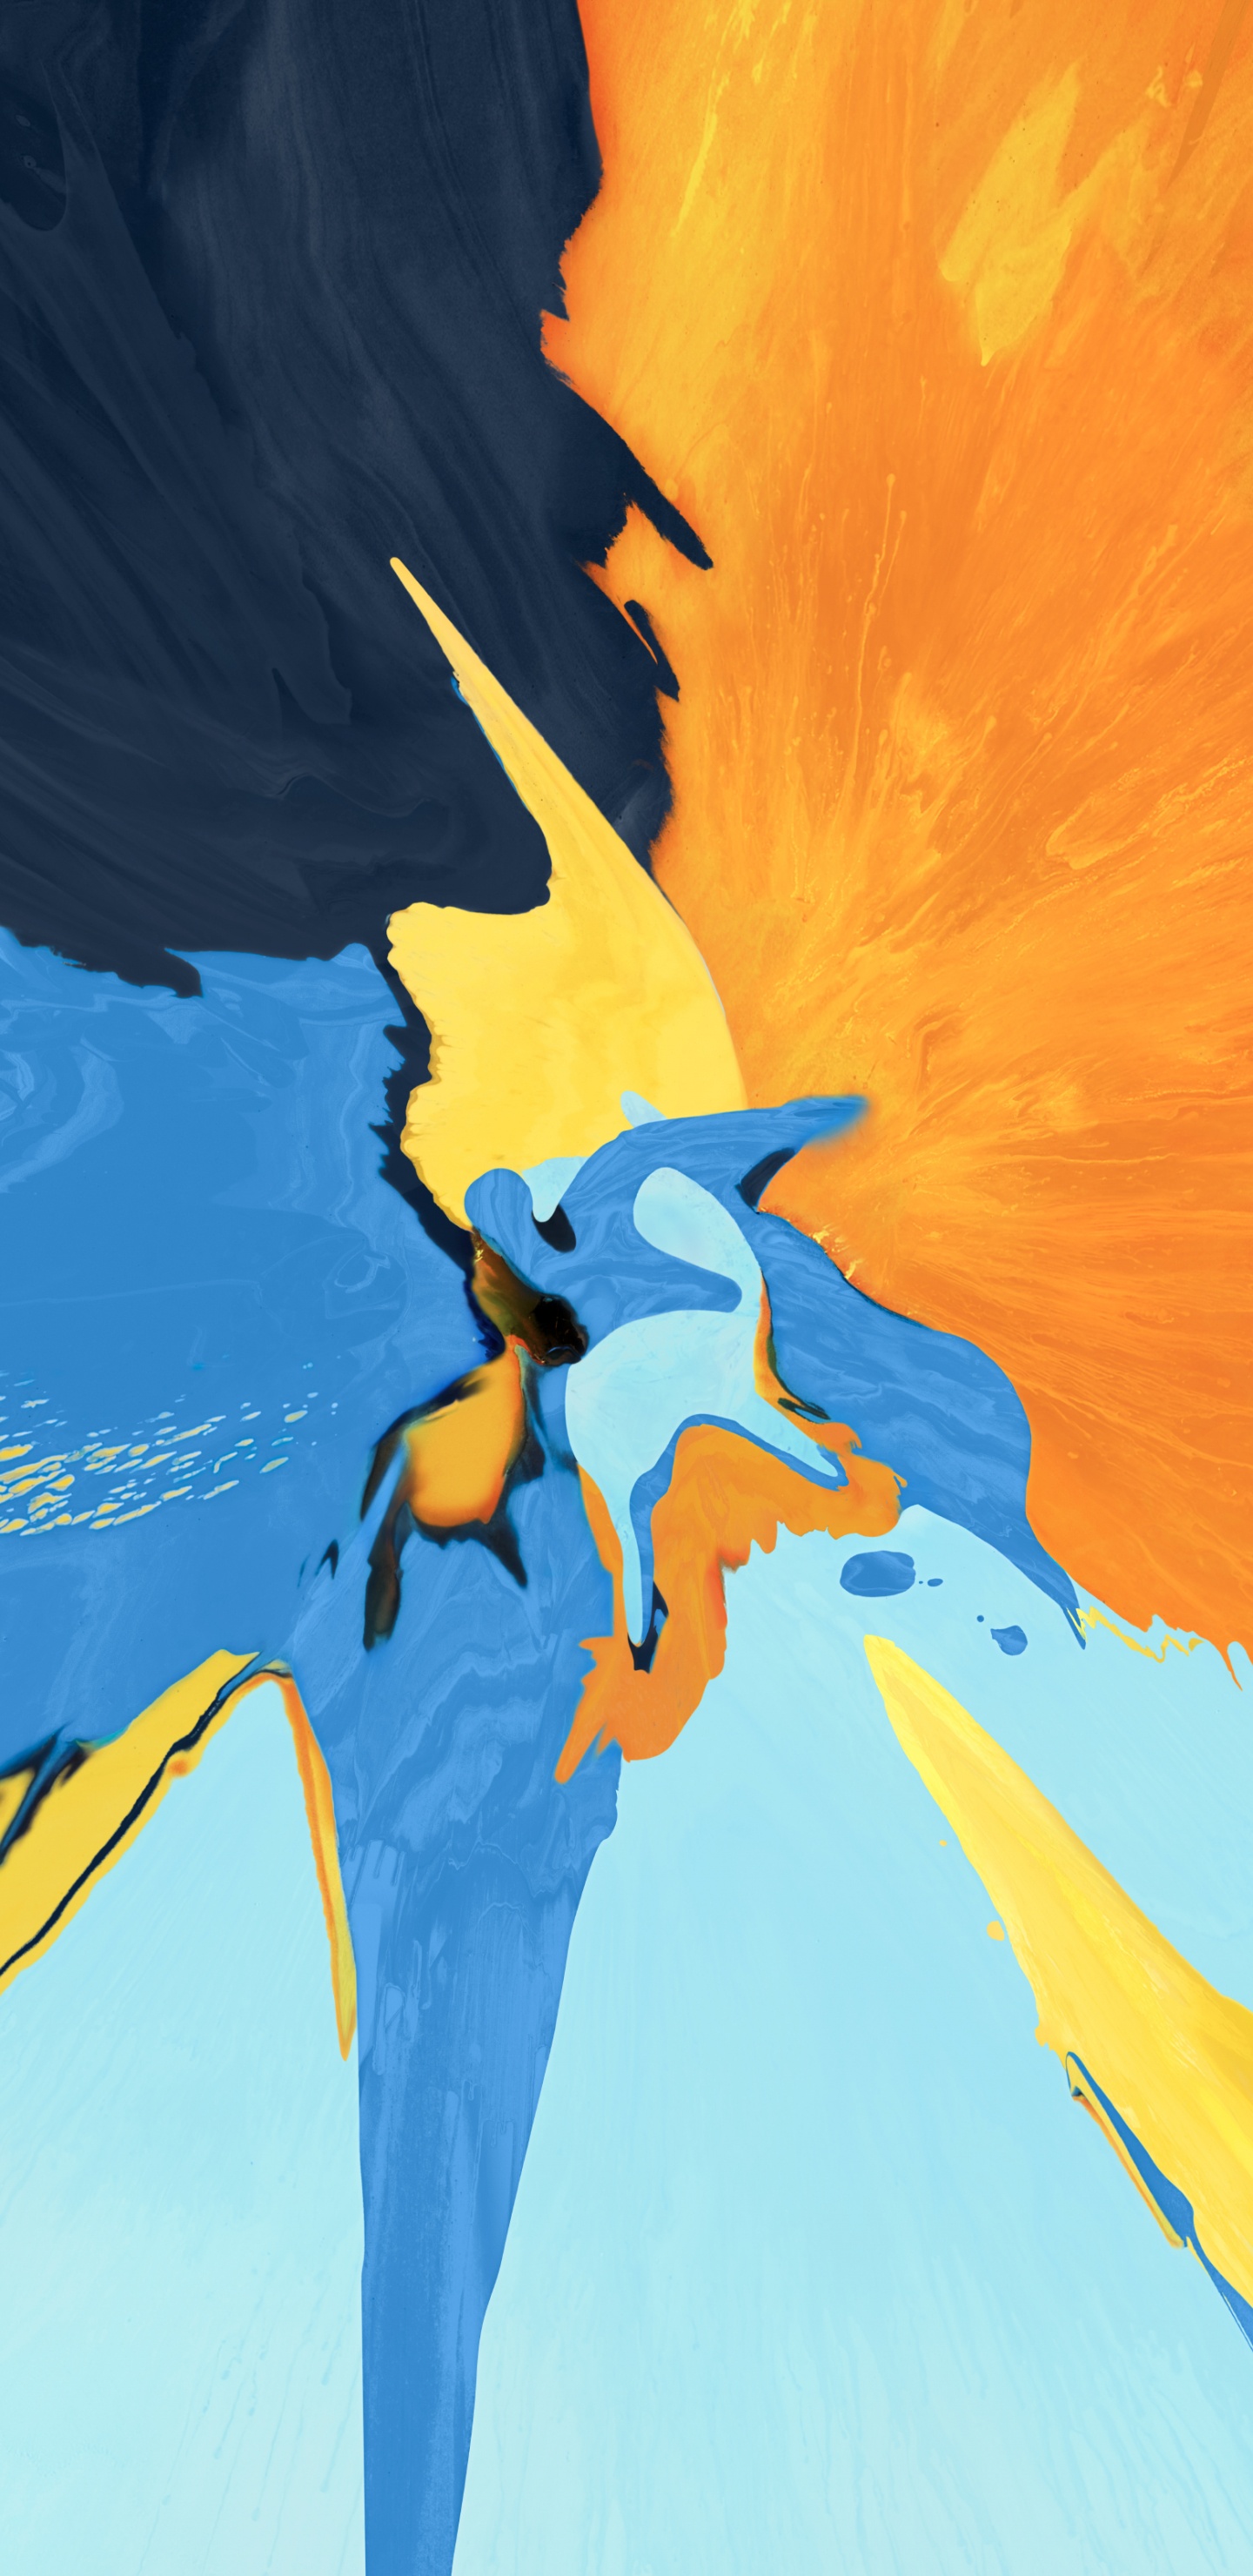 Blau-gelbe Und Schwarze Vogelmalerei. Wallpaper in 1440x2960 Resolution